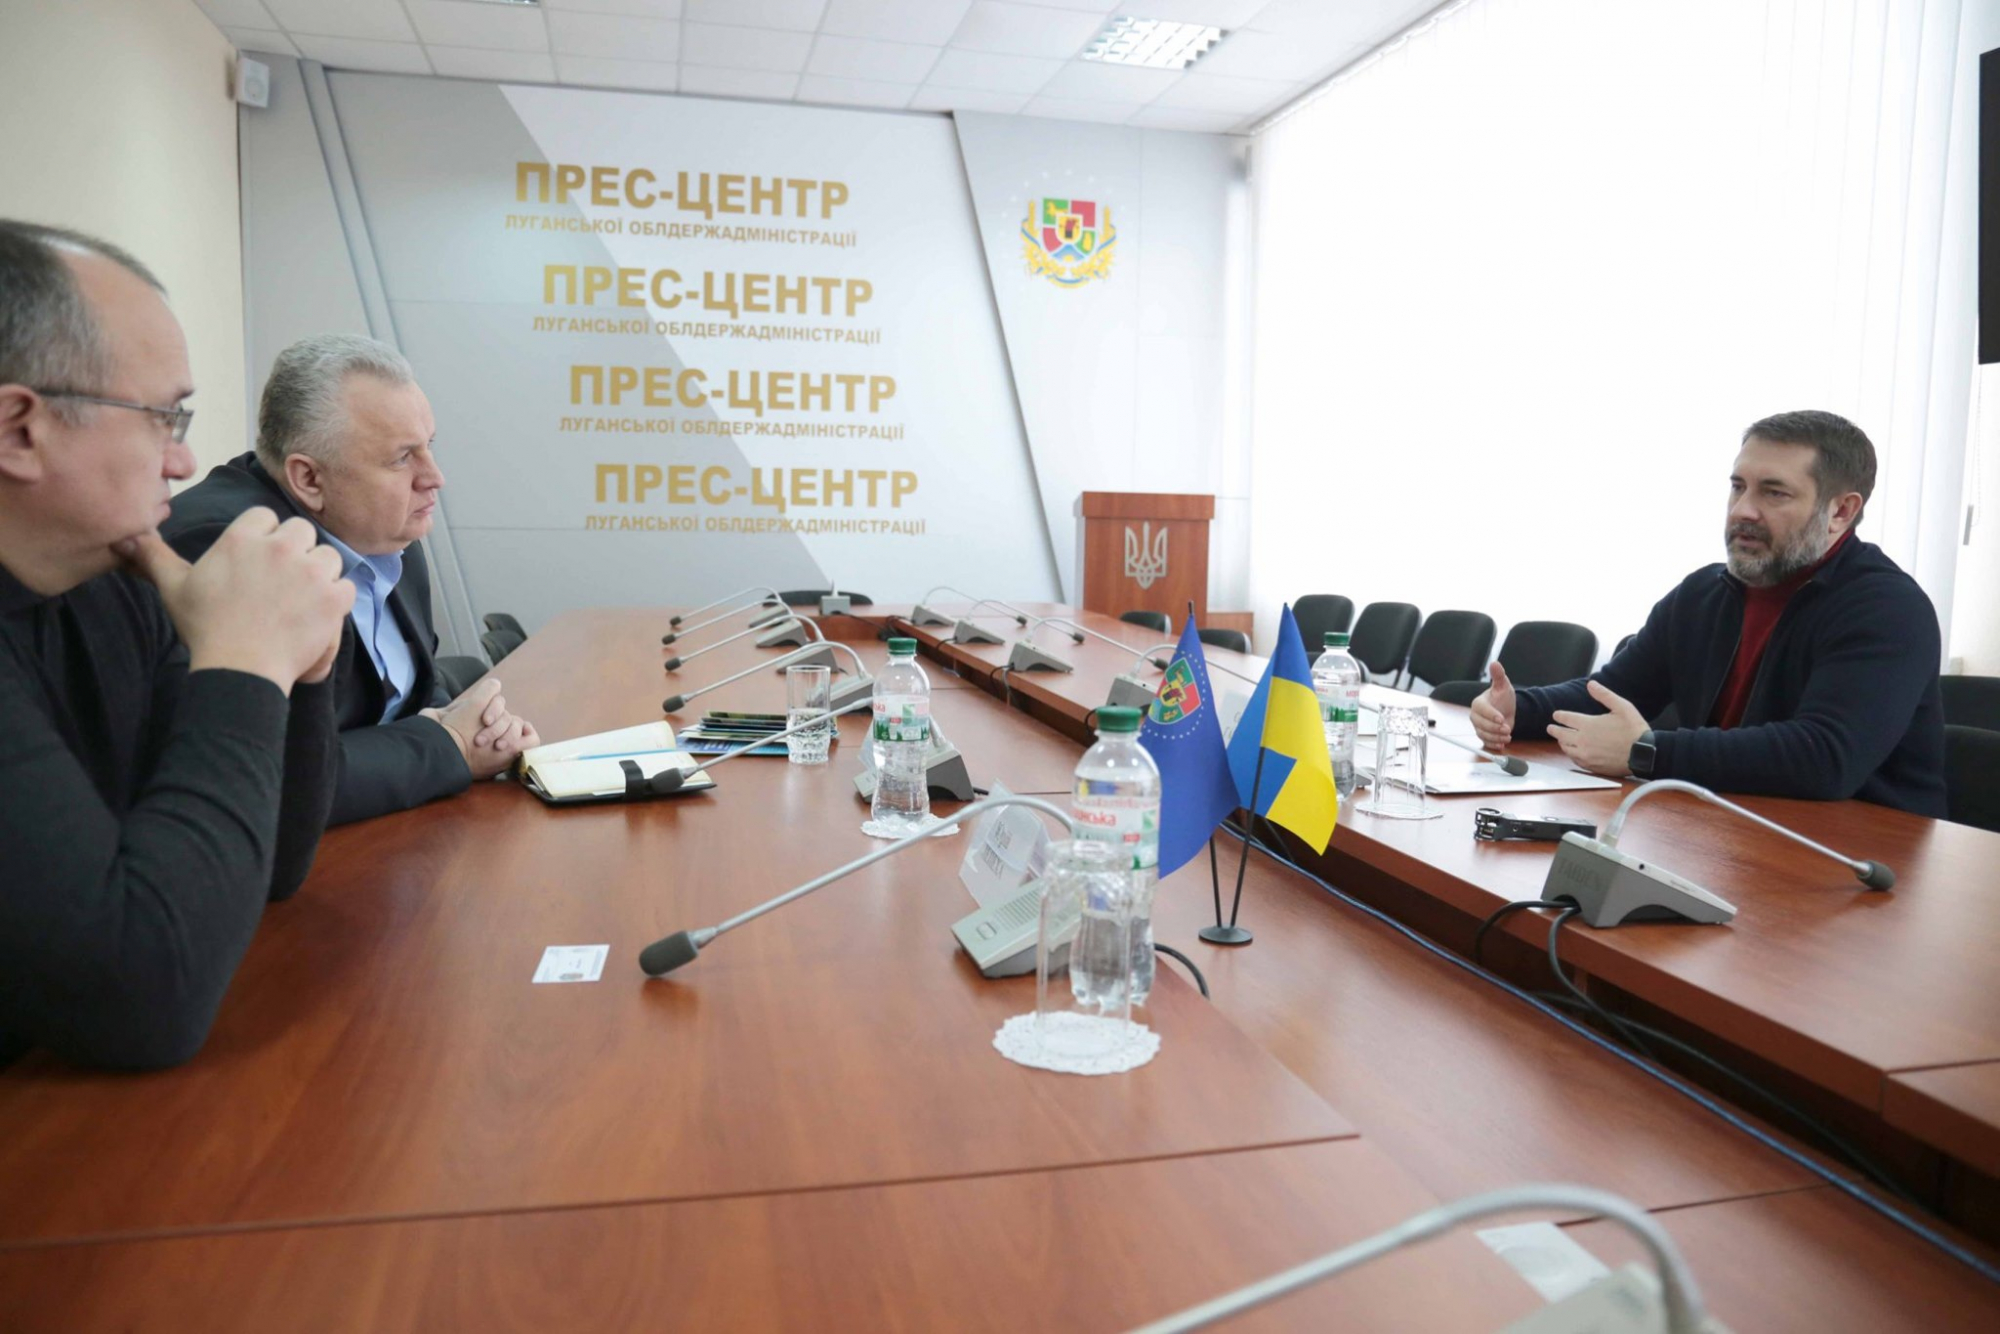 Представители Зеленого Креста посетили Луганщину: обсуждали варианты предоставления помощи